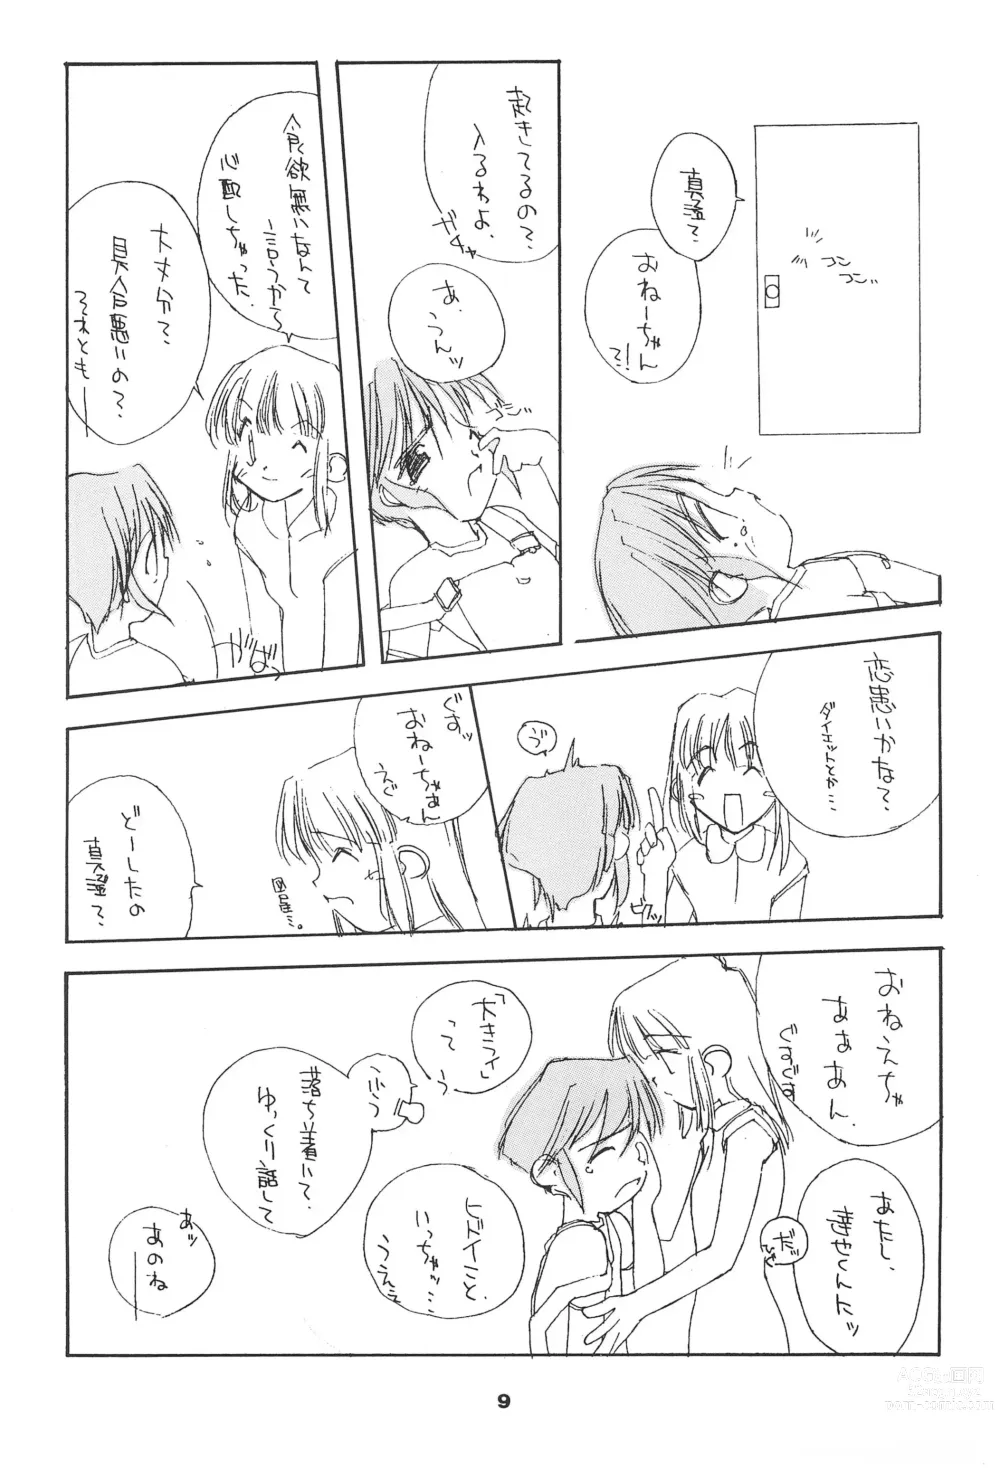 Page 9 of doujinshi Liru 3